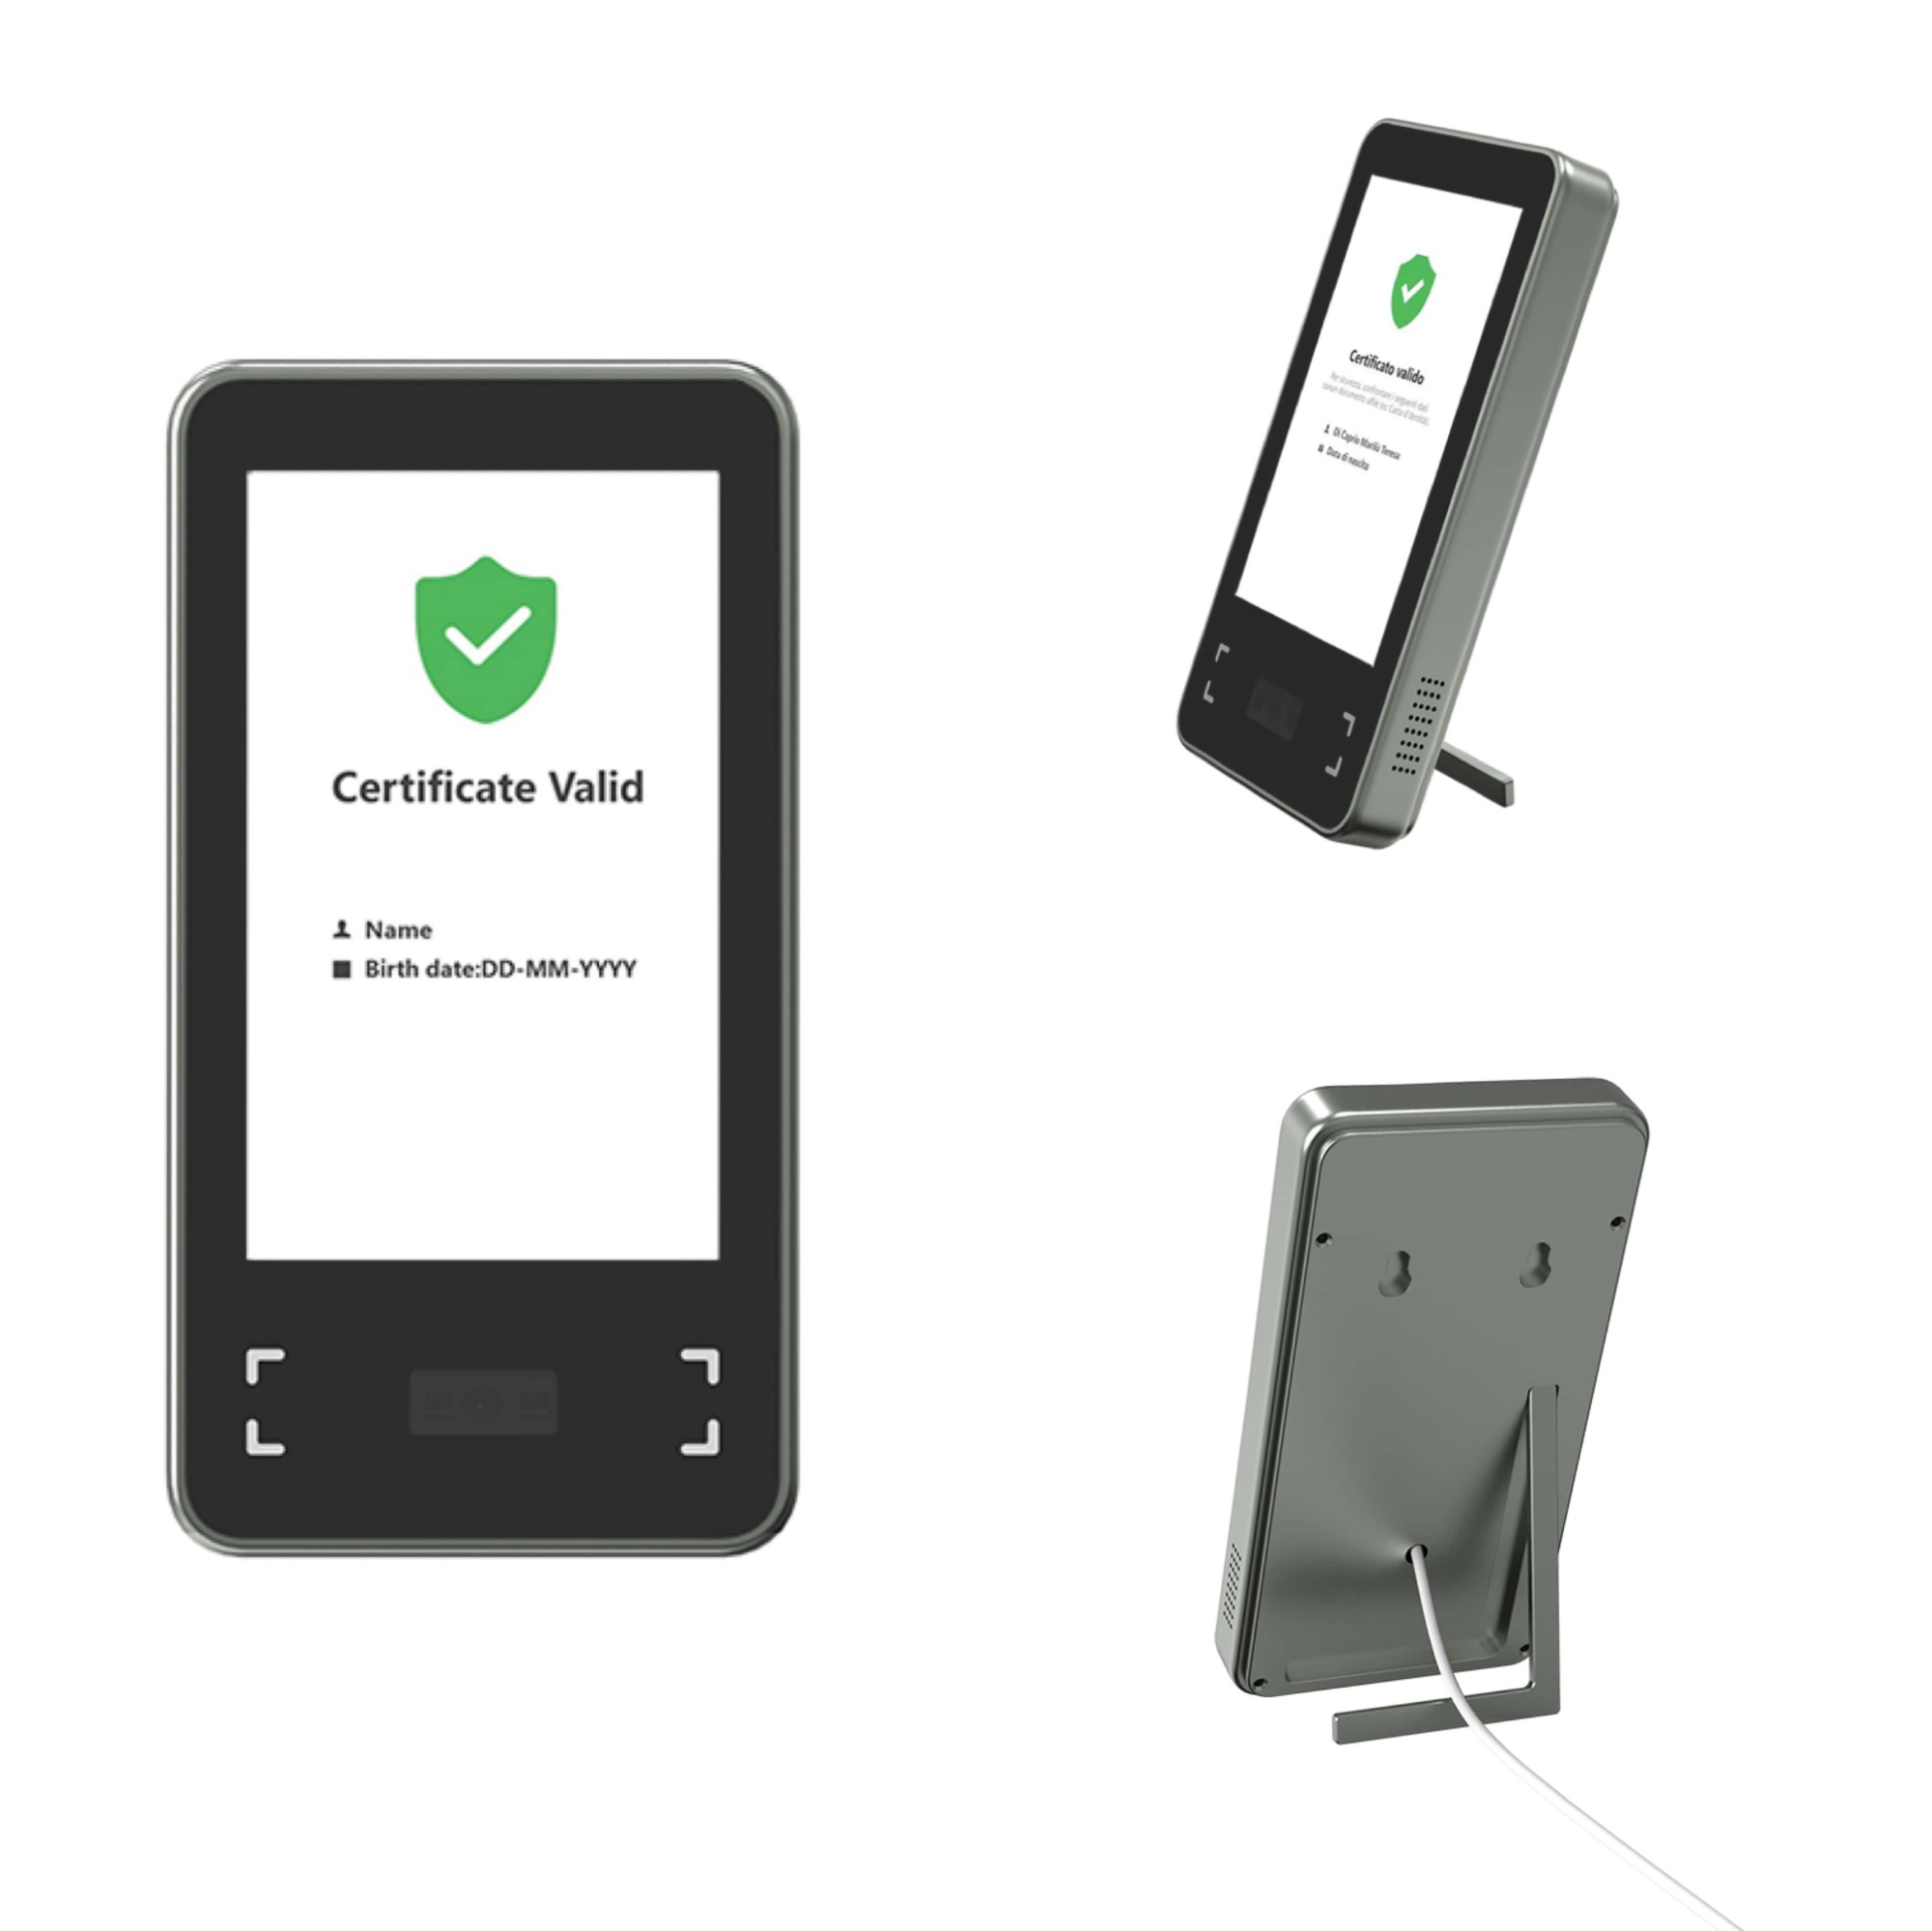 EU green pass code scanner